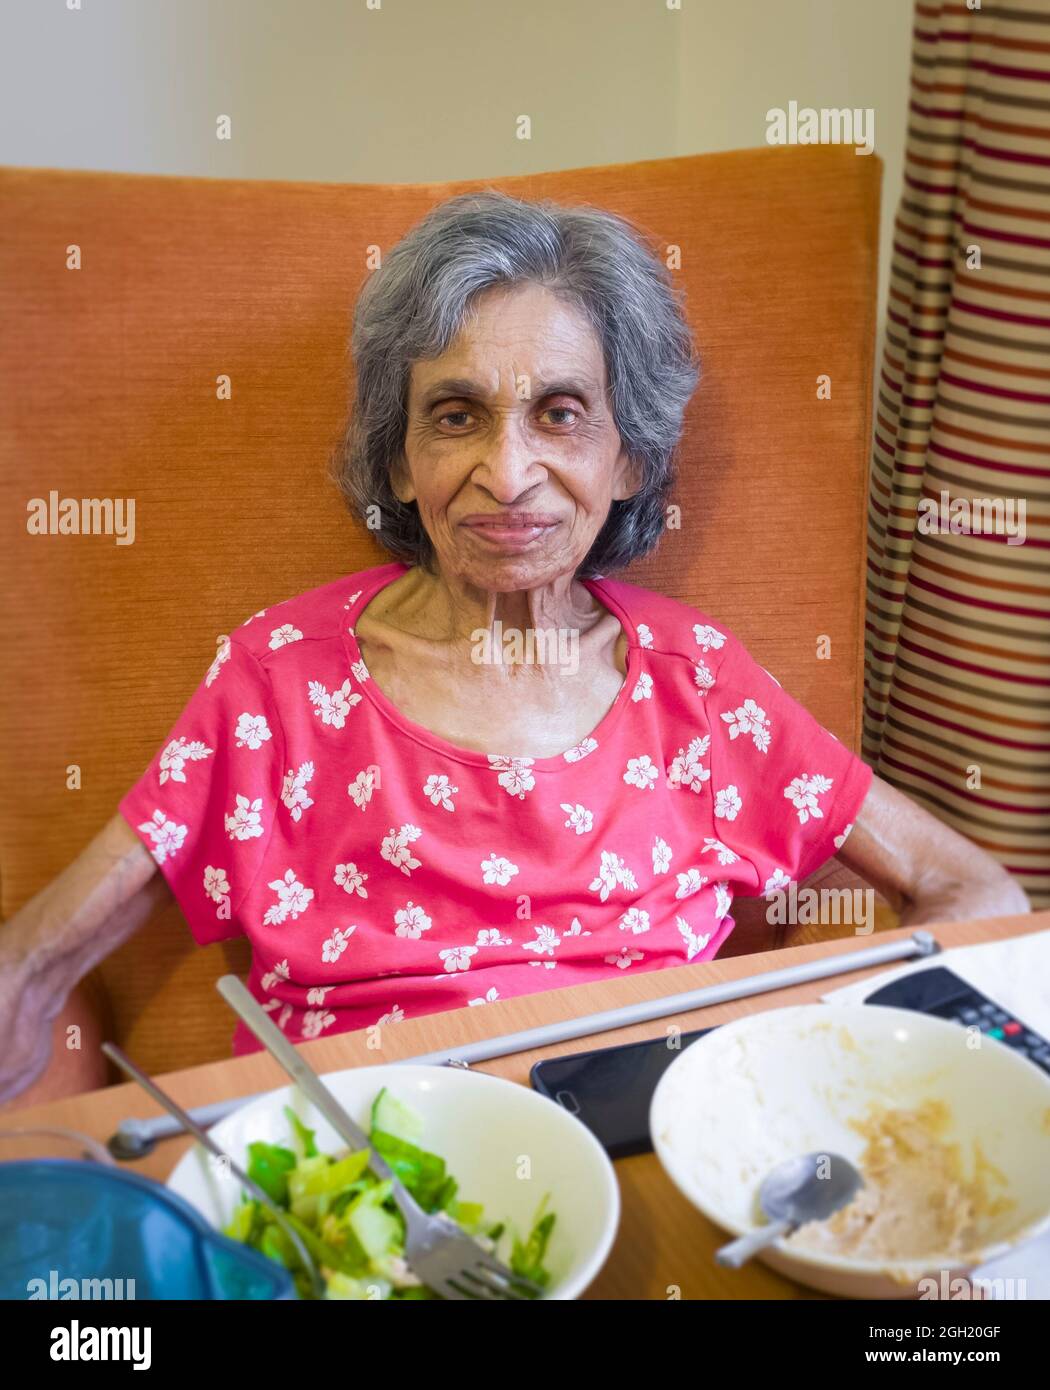 Donna indiana anziana in una casa di cura o di cura, Regno Unito, seduta in una sedia che mangia un pasto. Raffigura fragilità e malnutrizione nella vecchiaia Foto Stock